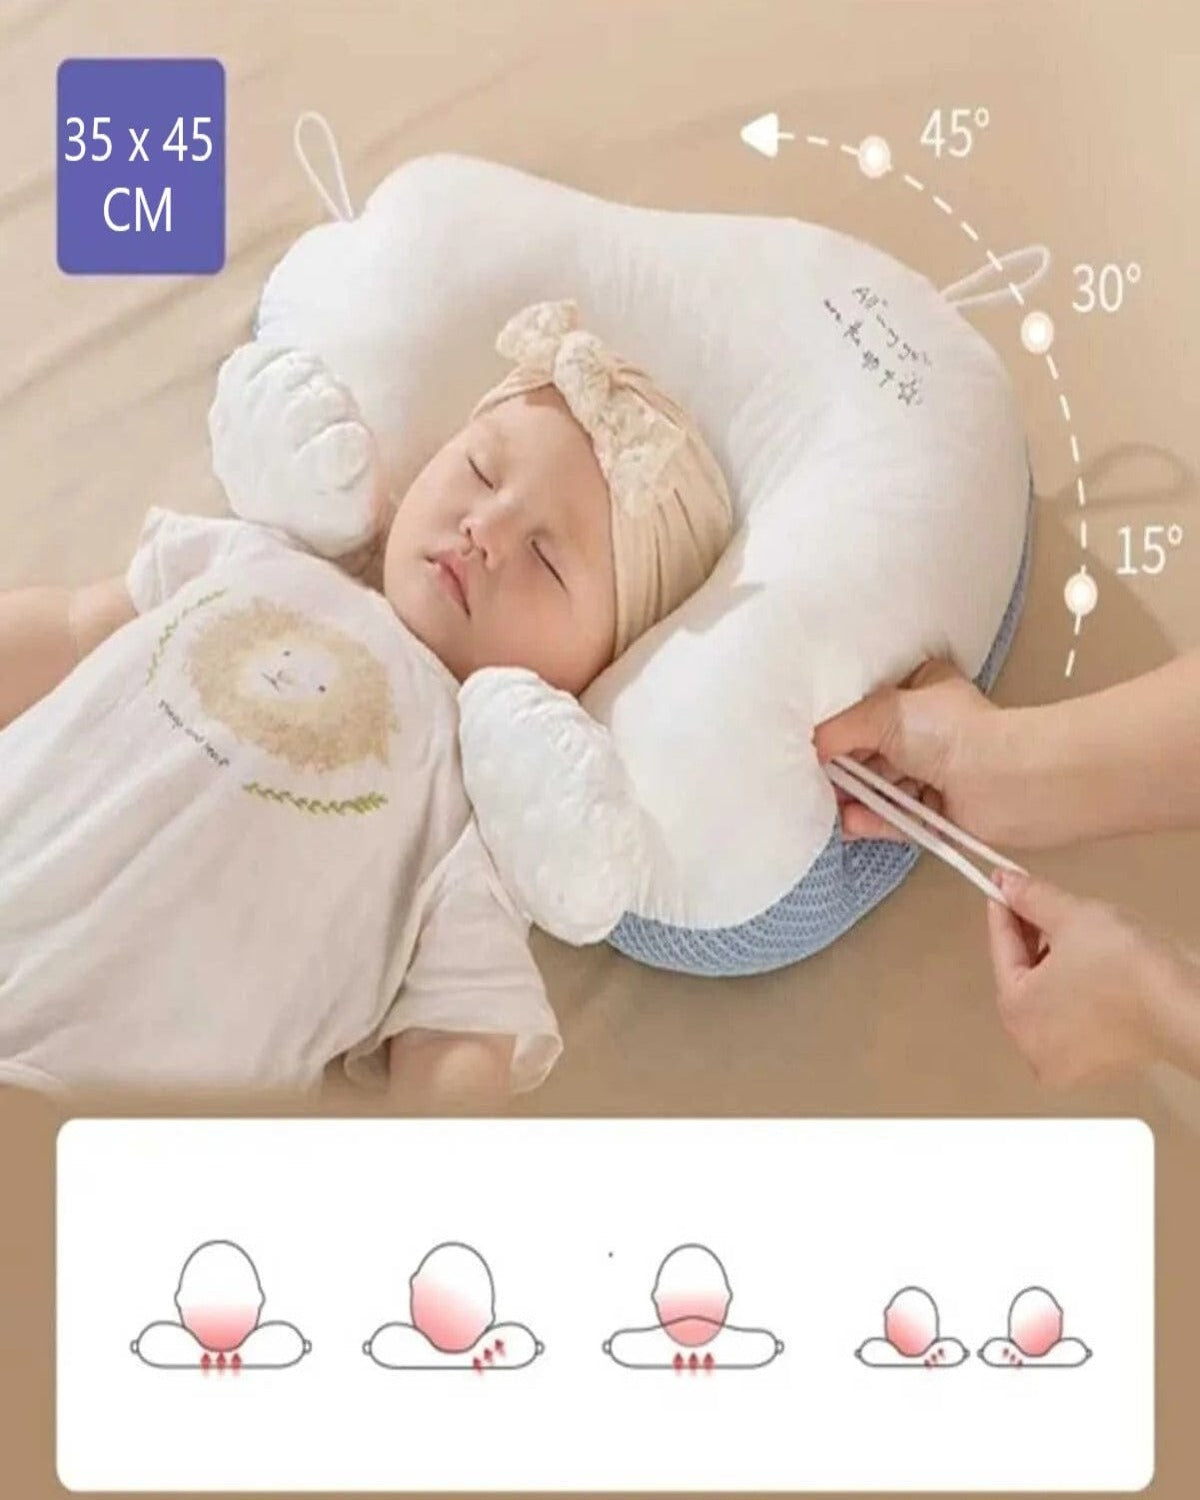 Loolpi Home Bebek Karyolası ve Küçük Çocuk Yatağı Aksesuarları Ayarlanabilir Bebek Düz Kafa Sendromu Önlem Yastığı